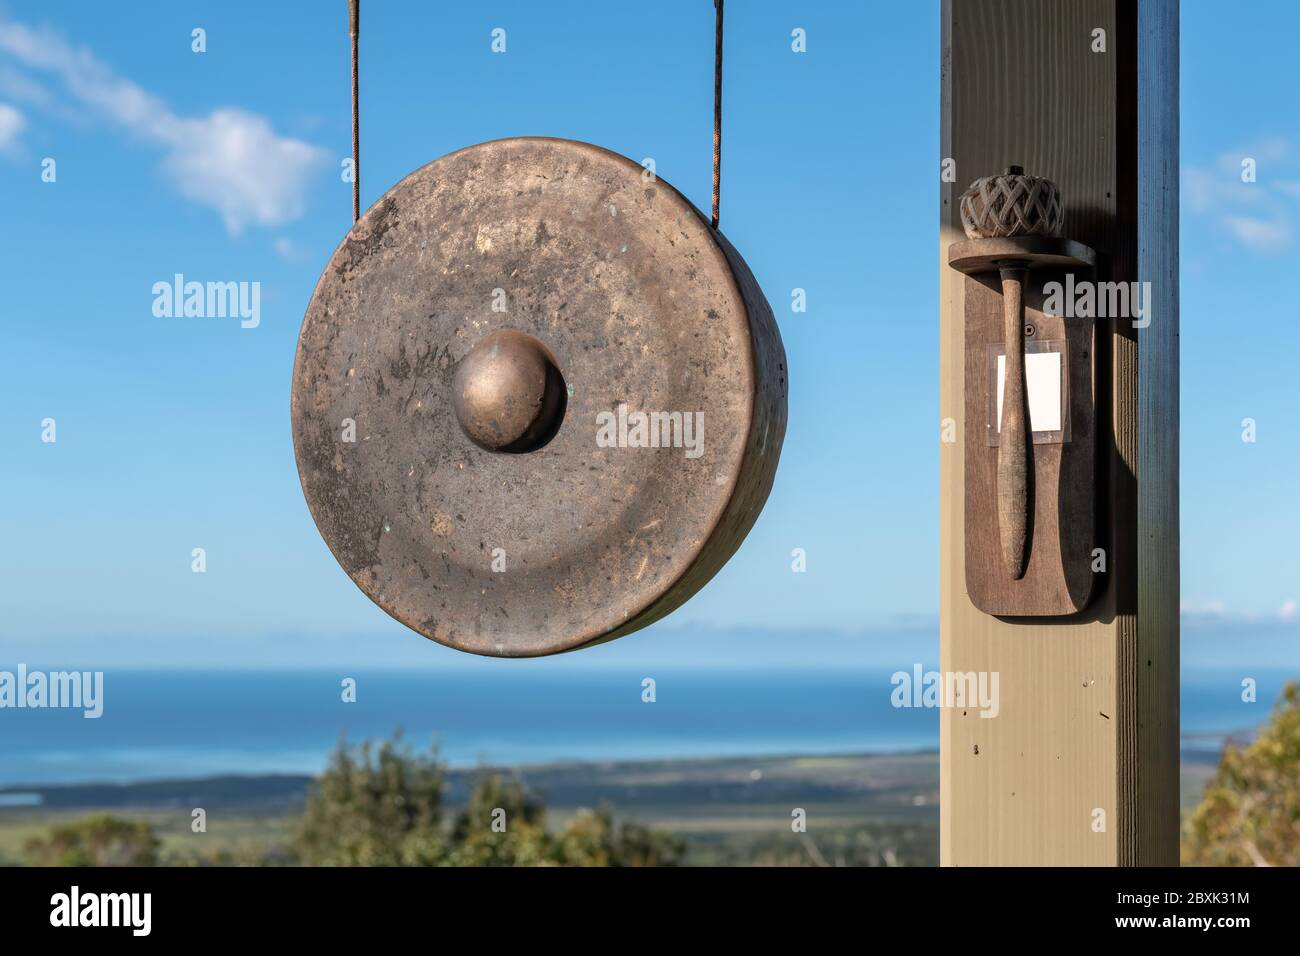 Un gong est suspendu à l'extérieur à côté d'un maillet monté sur un poteau.  L'arrière-plan est une vue sur l'océan, une végétation luxuriante et un  ciel bleu Photo Stock - Alamy